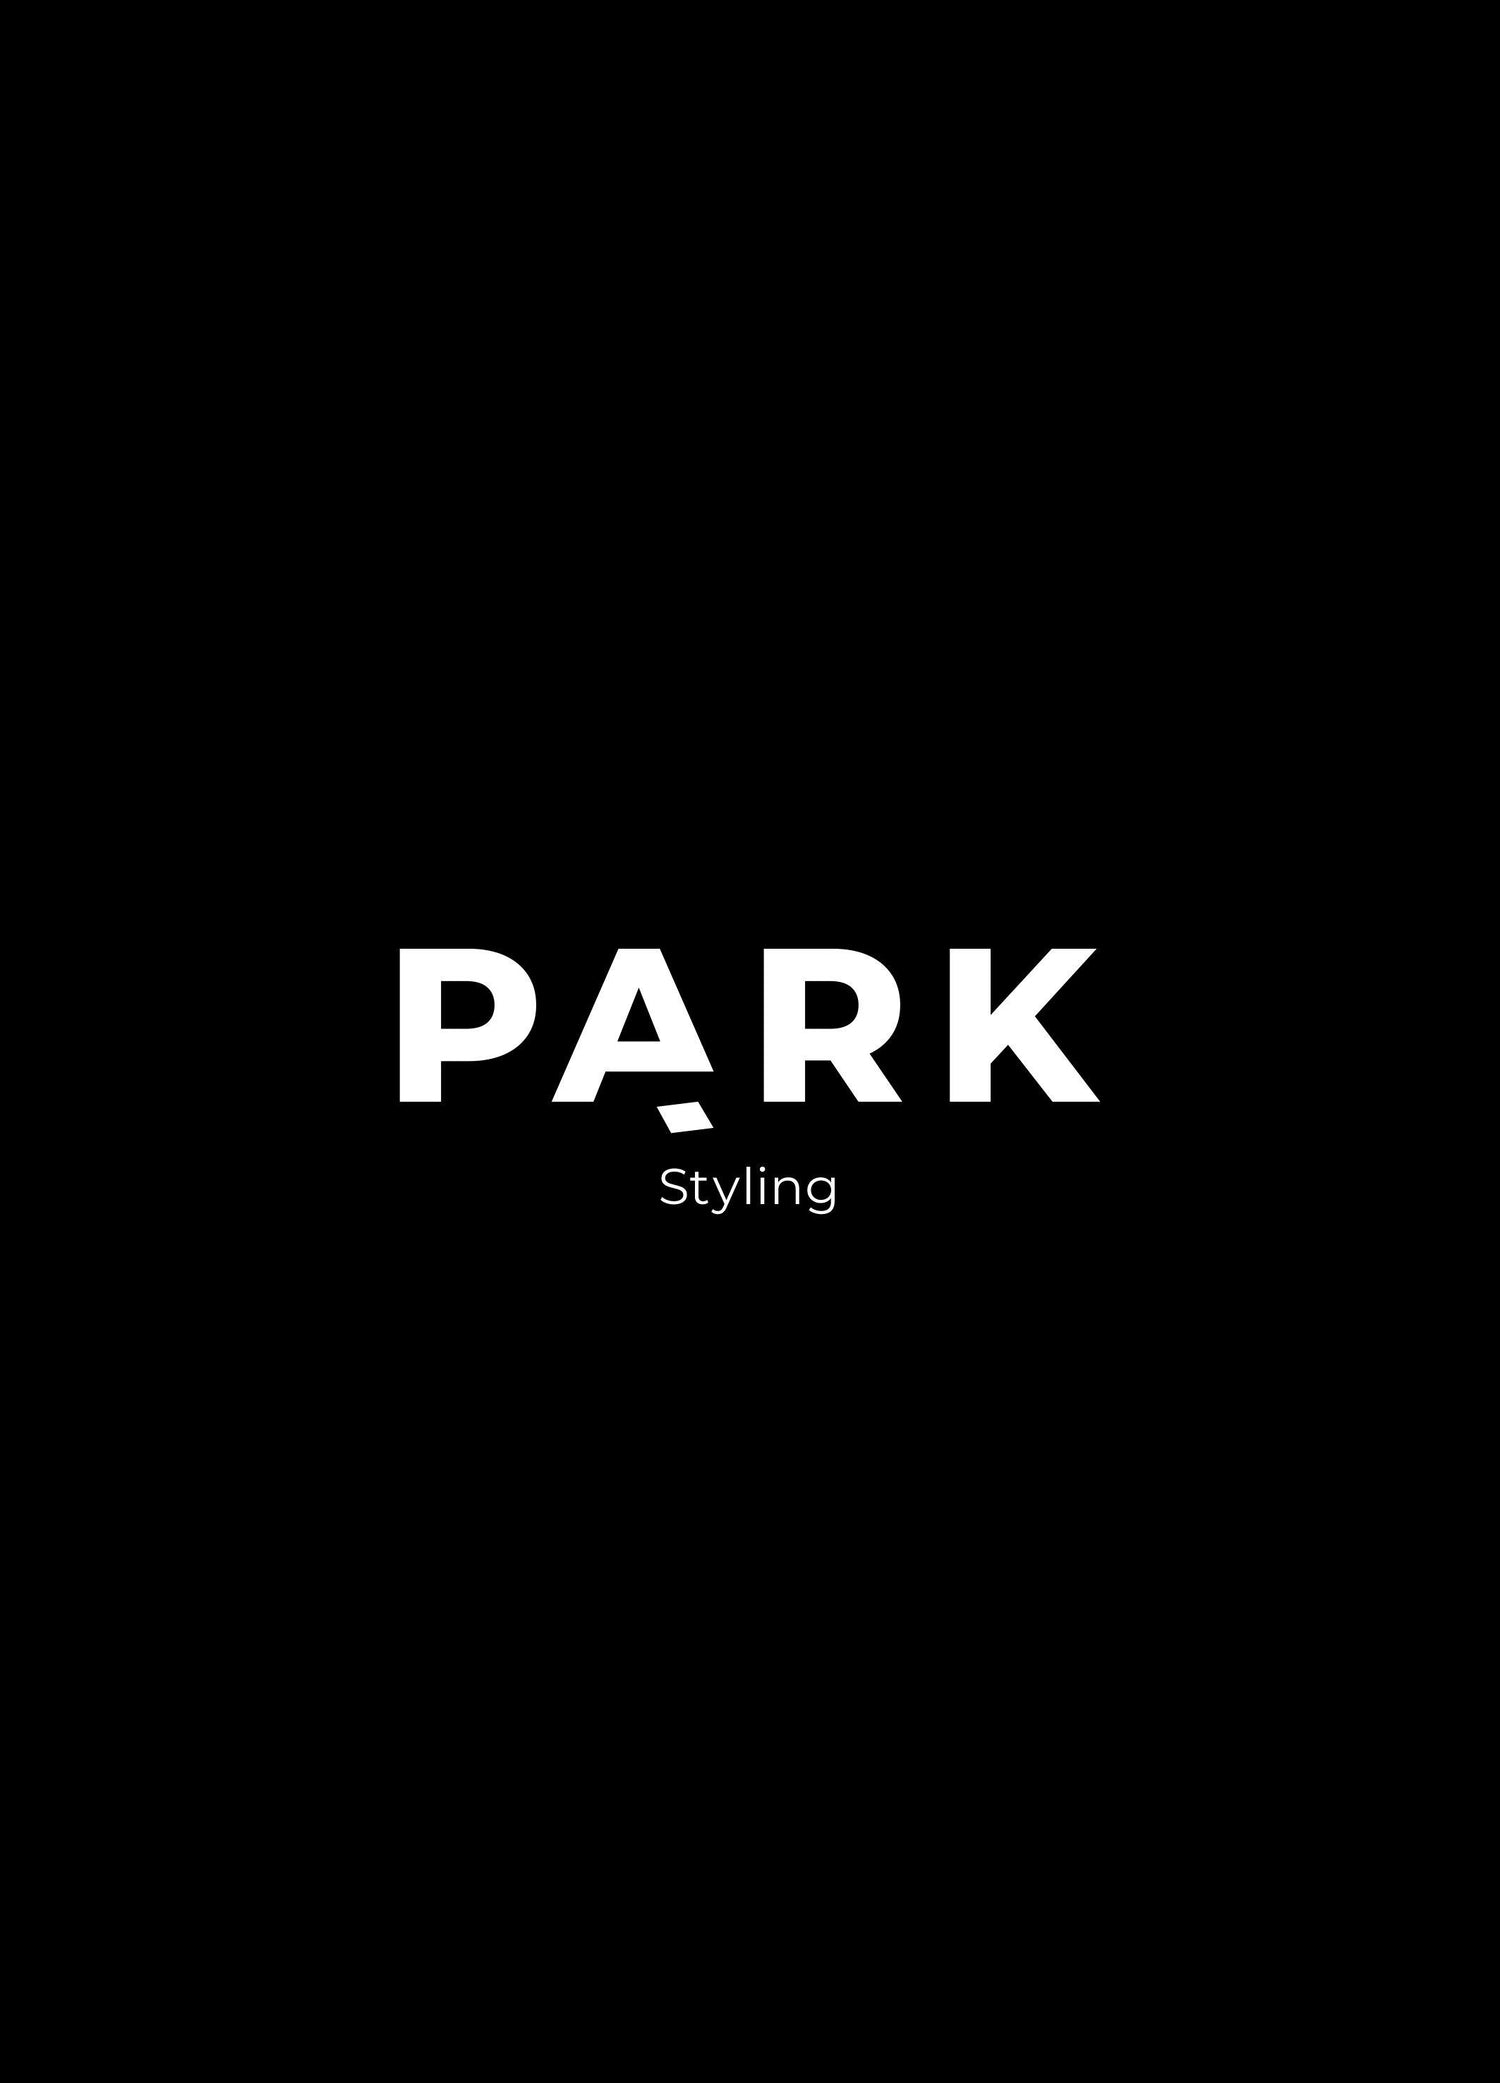 PARK er nomineret til Danish Beauty Awards - PARK STYLING DK